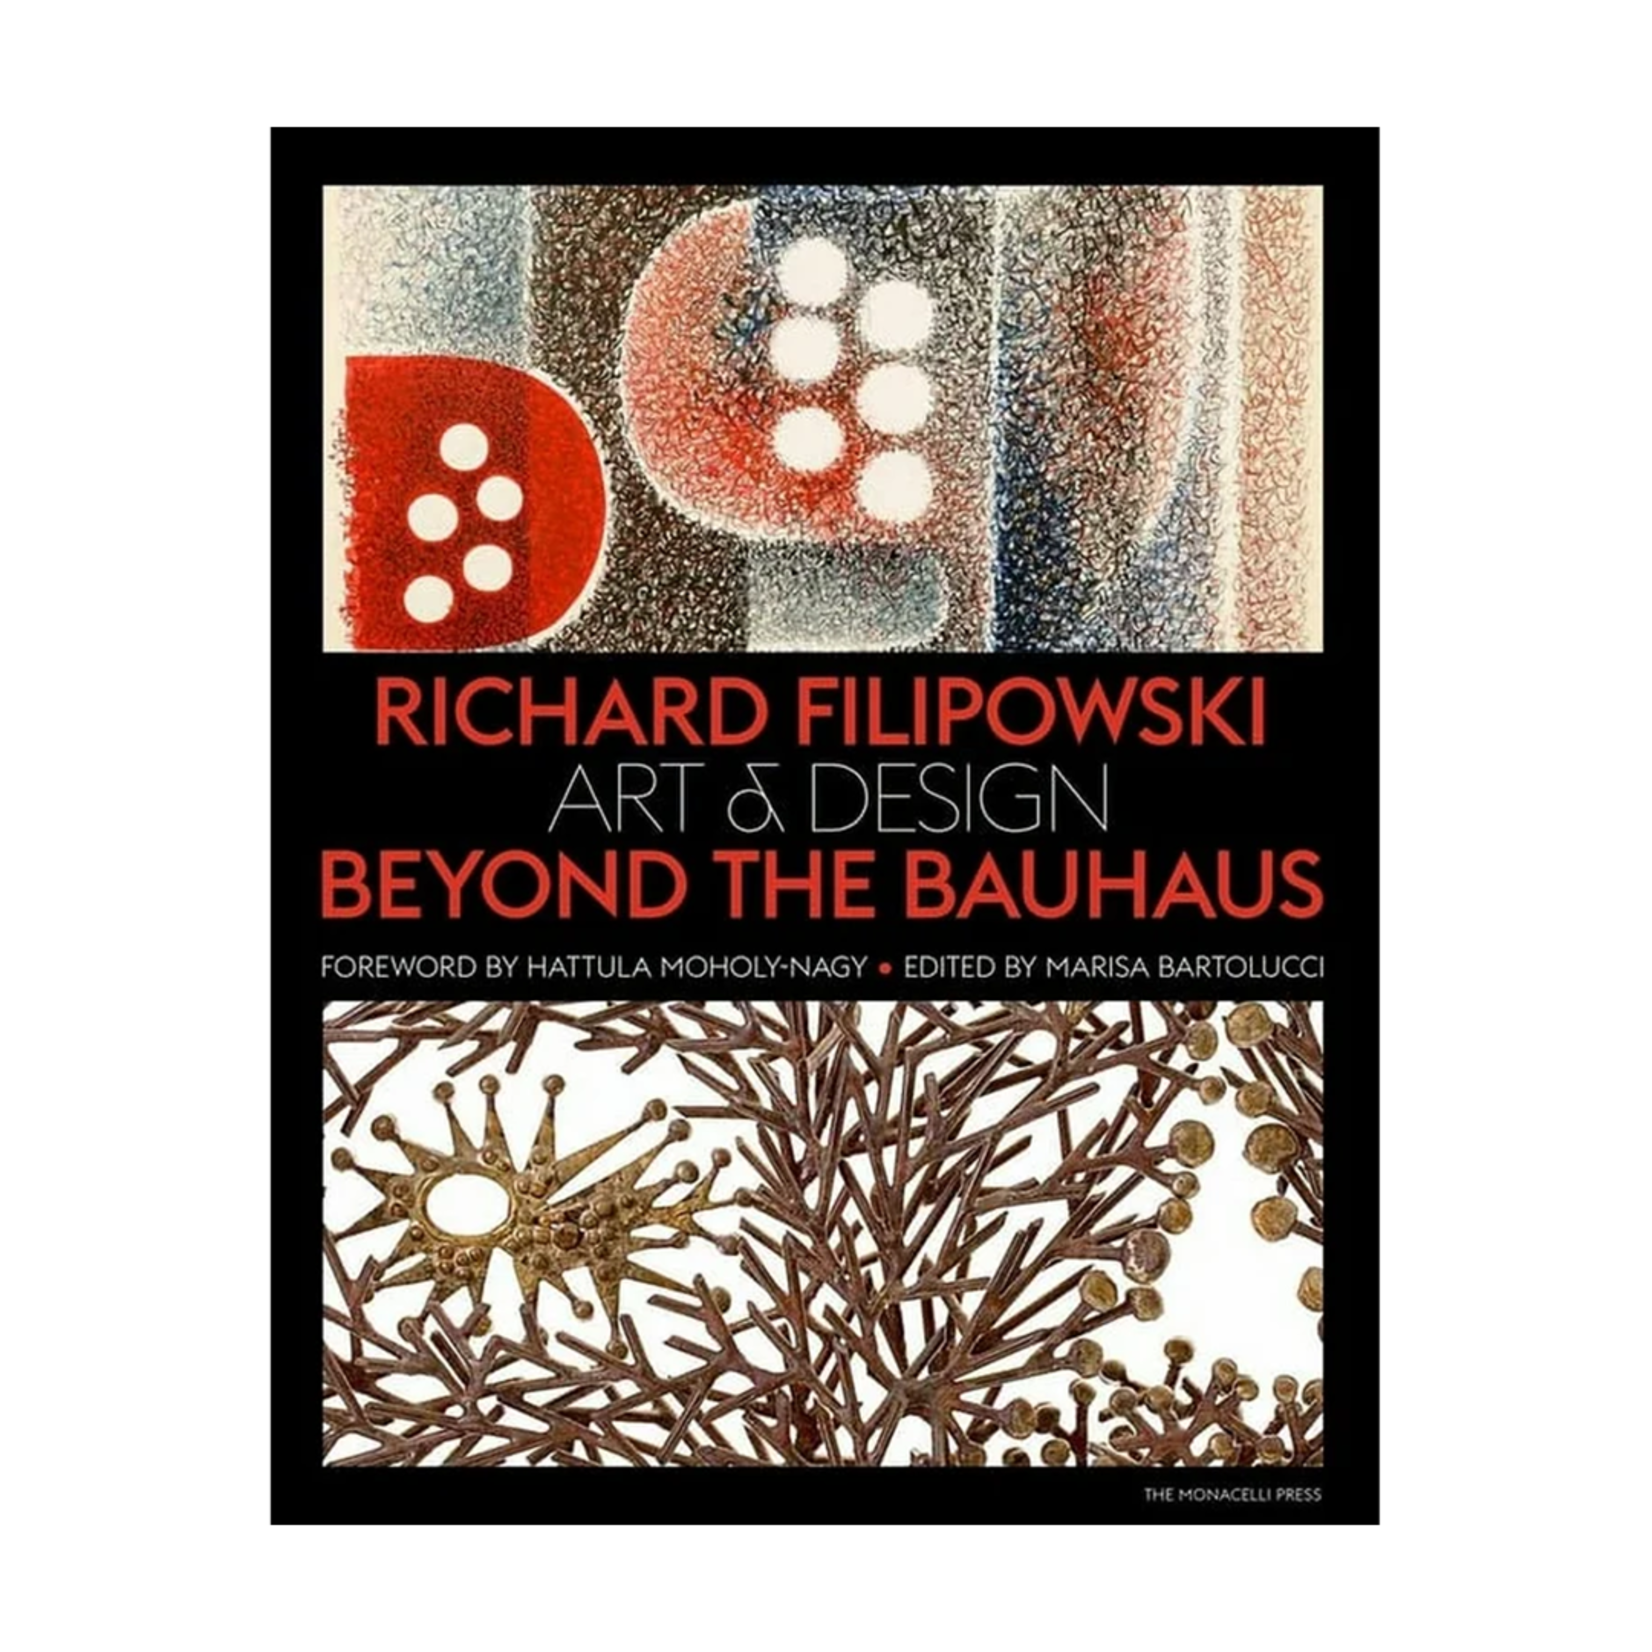 Art & Design Beyond the Bauhaus